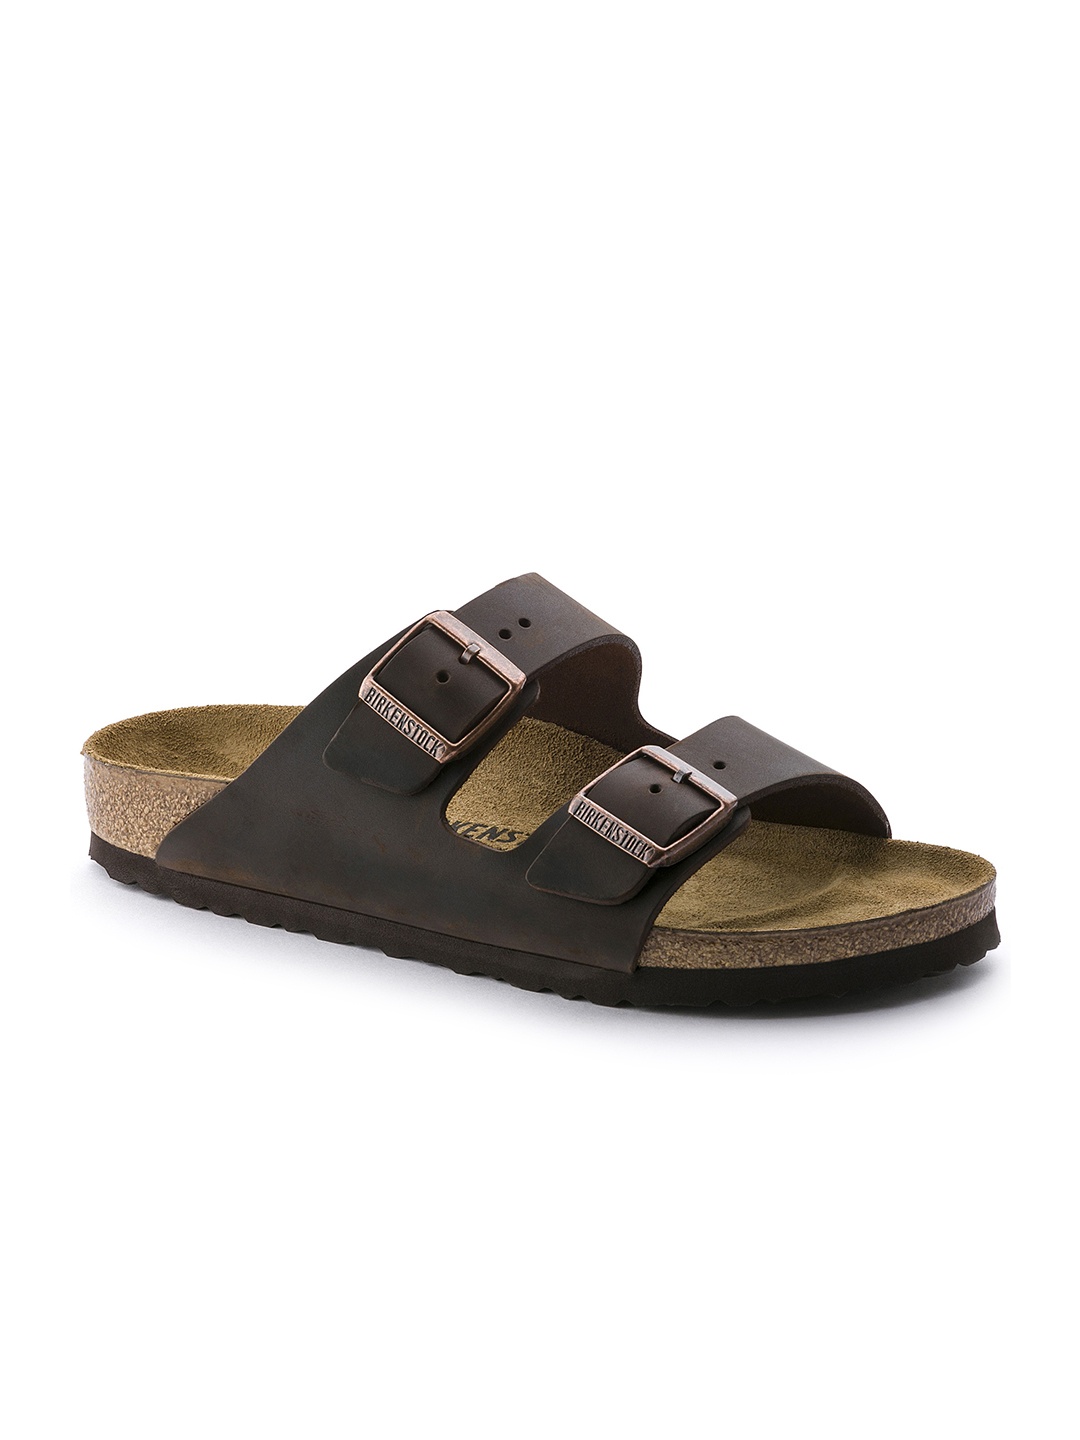 

Birkenstock Unisex Coffee Brown Solid Arizona Oiled Leather Regular Width Comfort Sandals